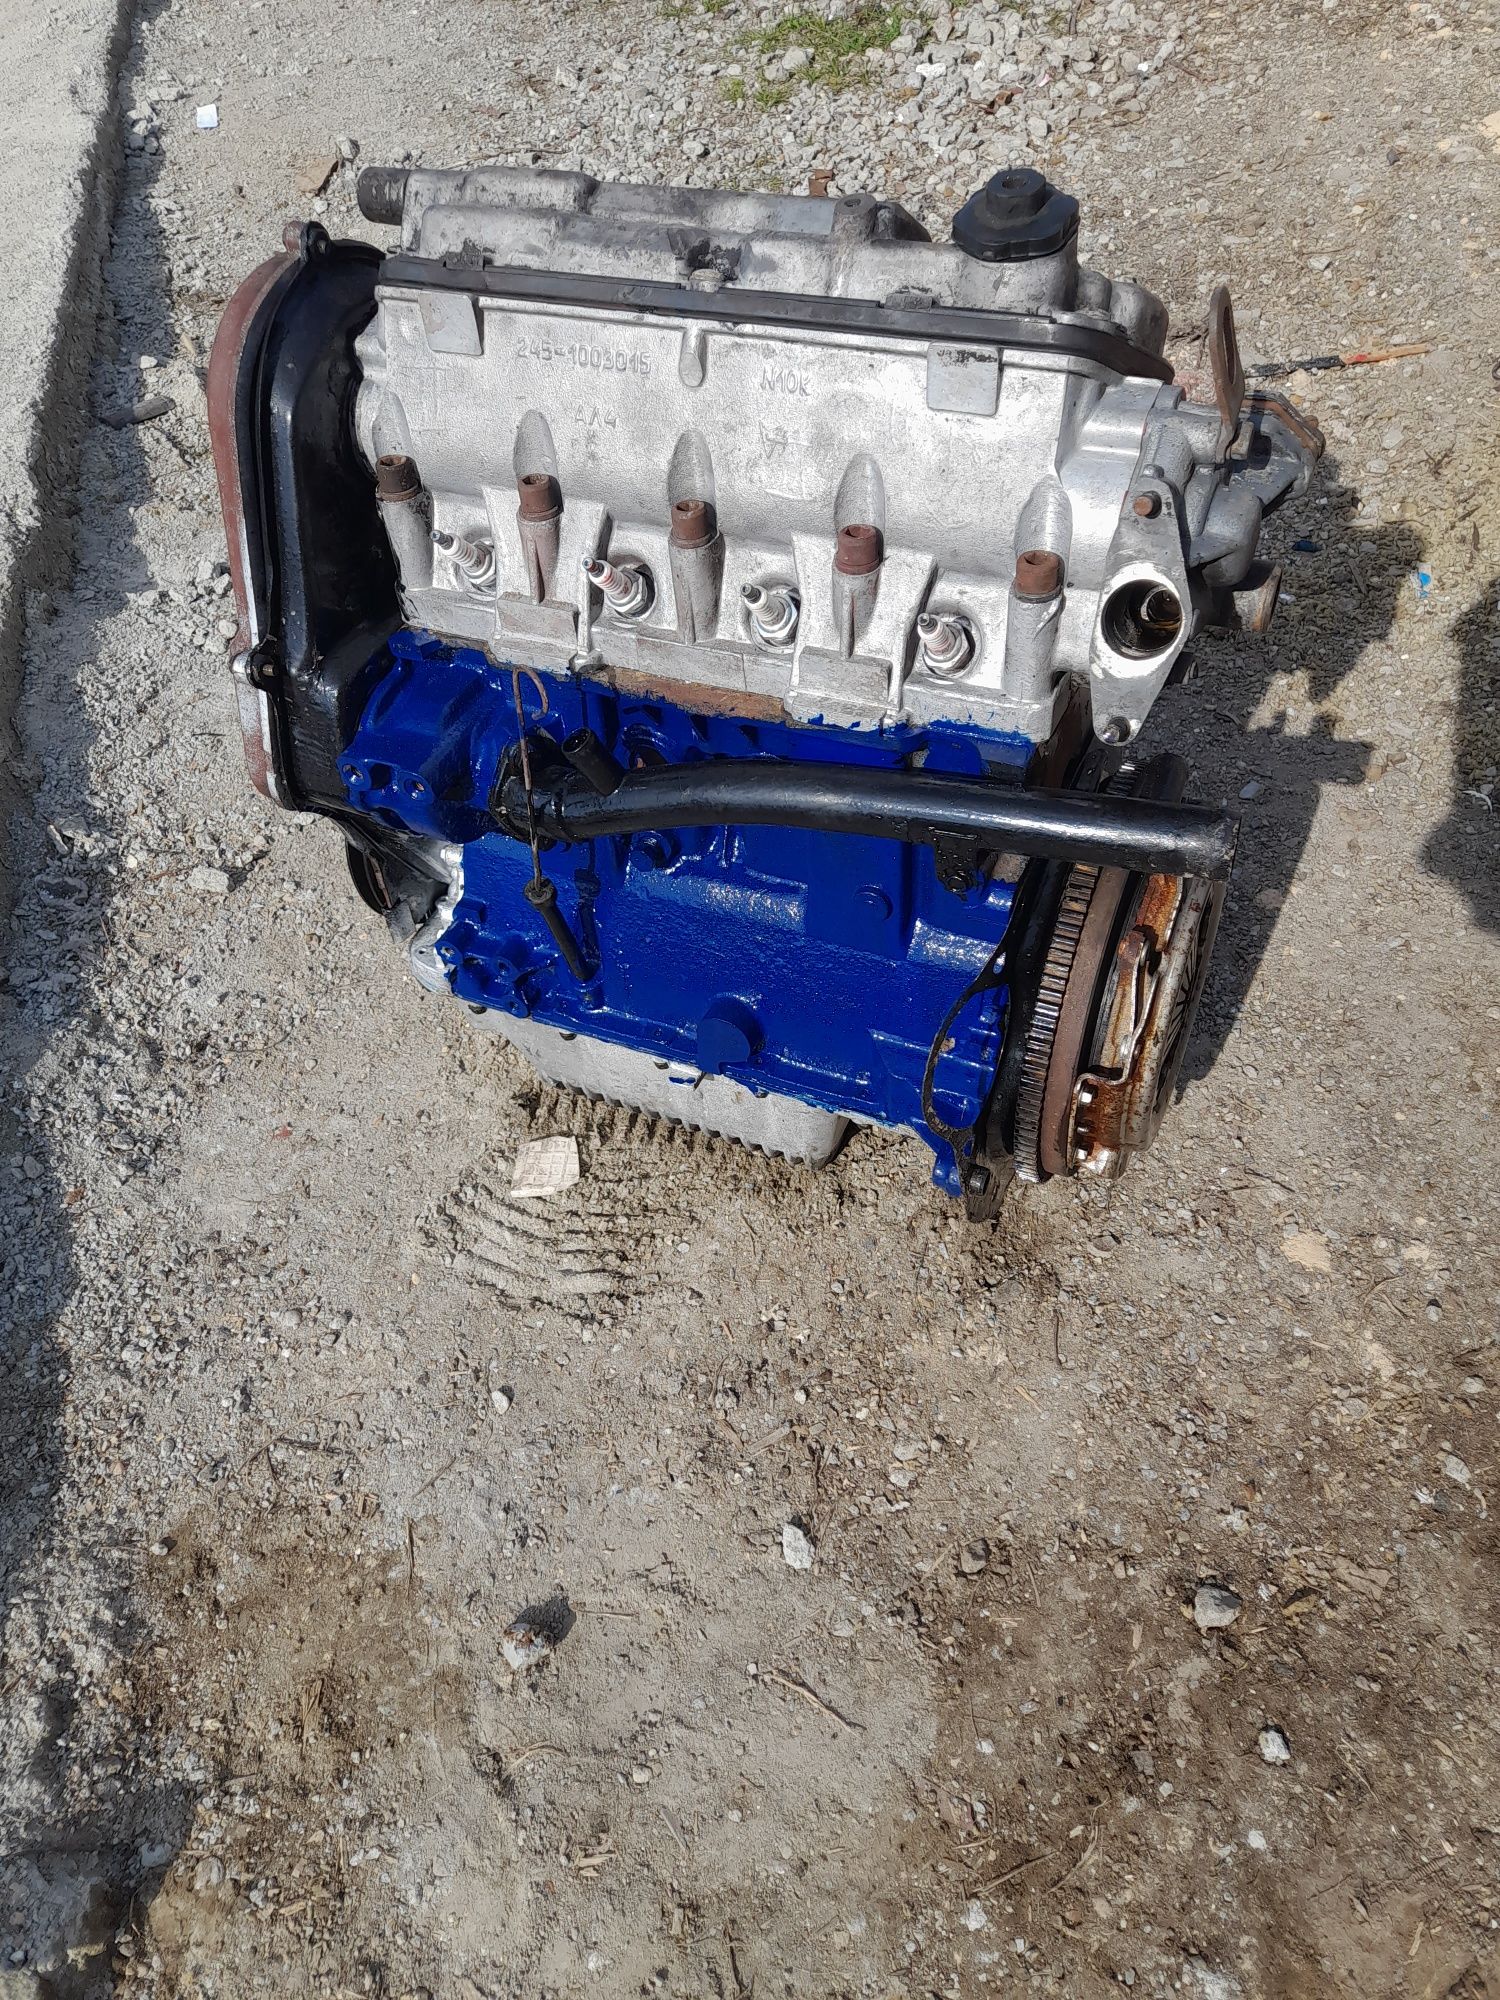 Двигатель Таврия Славута пикап 1.1 снят с машины.Пробег 15 000км.